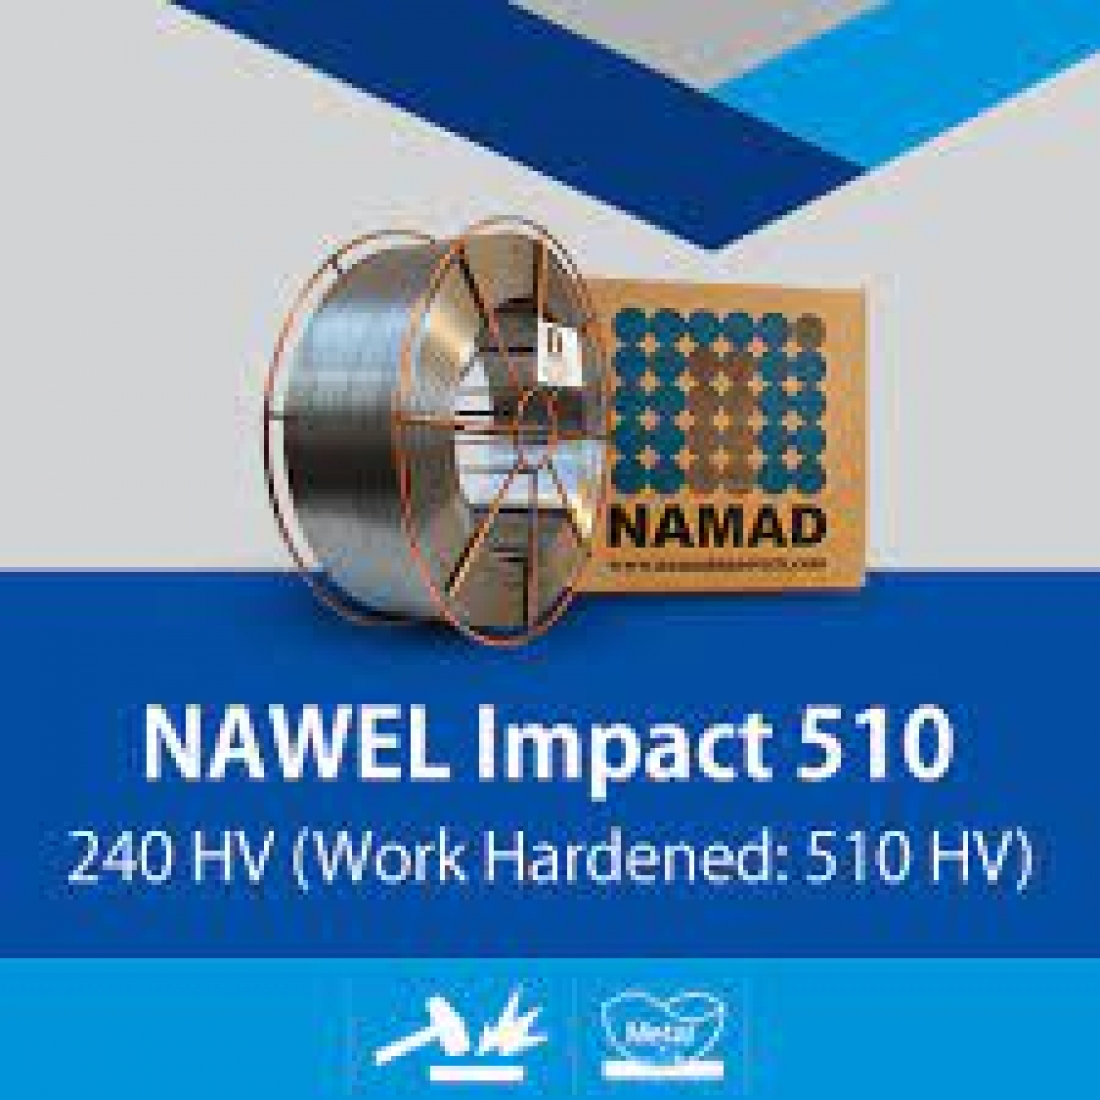 NAWEL Impact 510